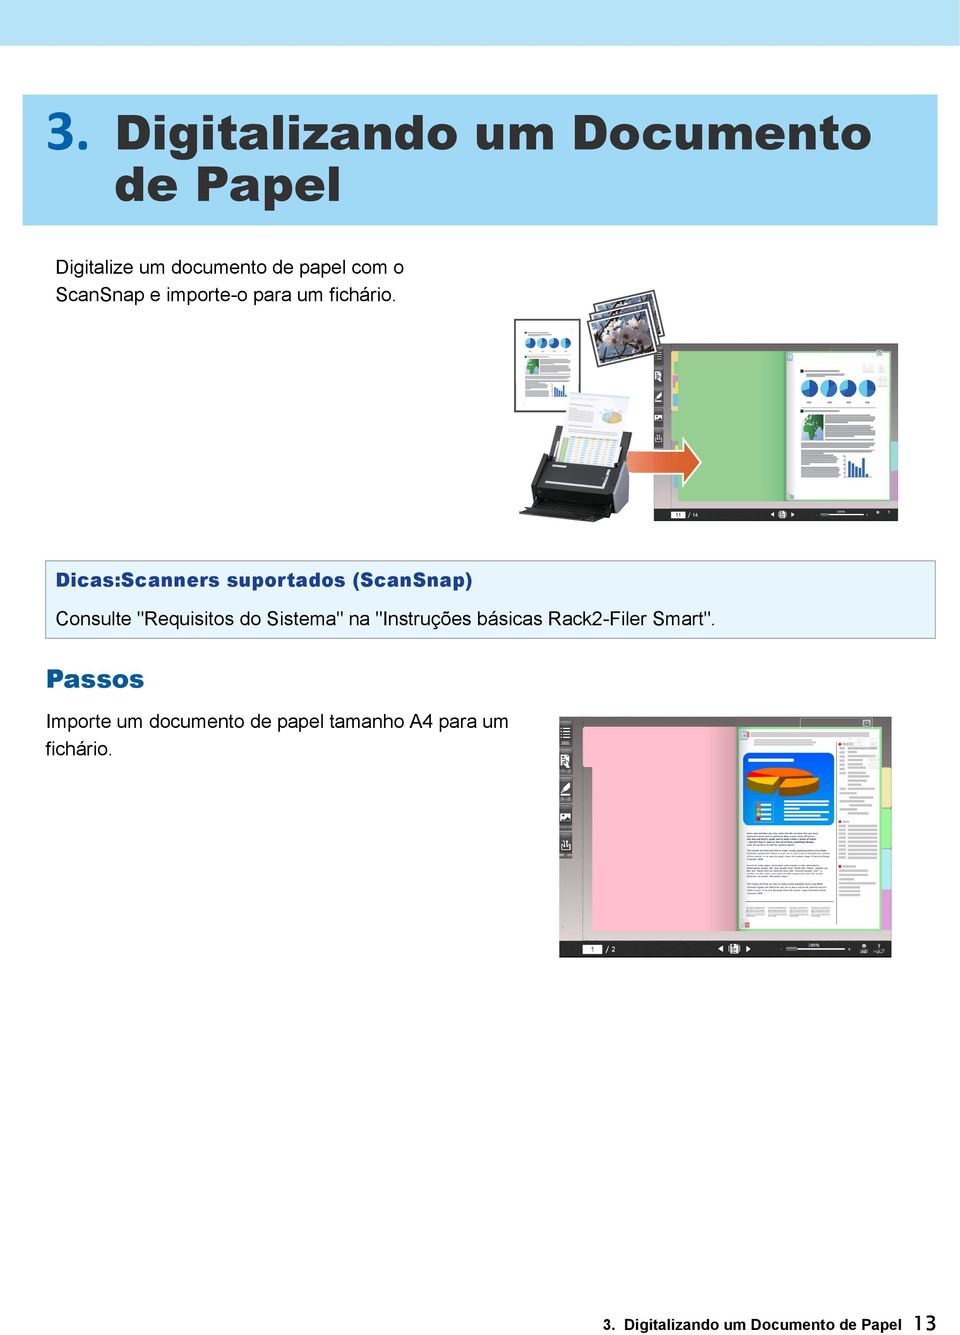 Dicas:Scanners suportados (ScanSnap) Consulte "Requisitos do Sistema" na "Instruções